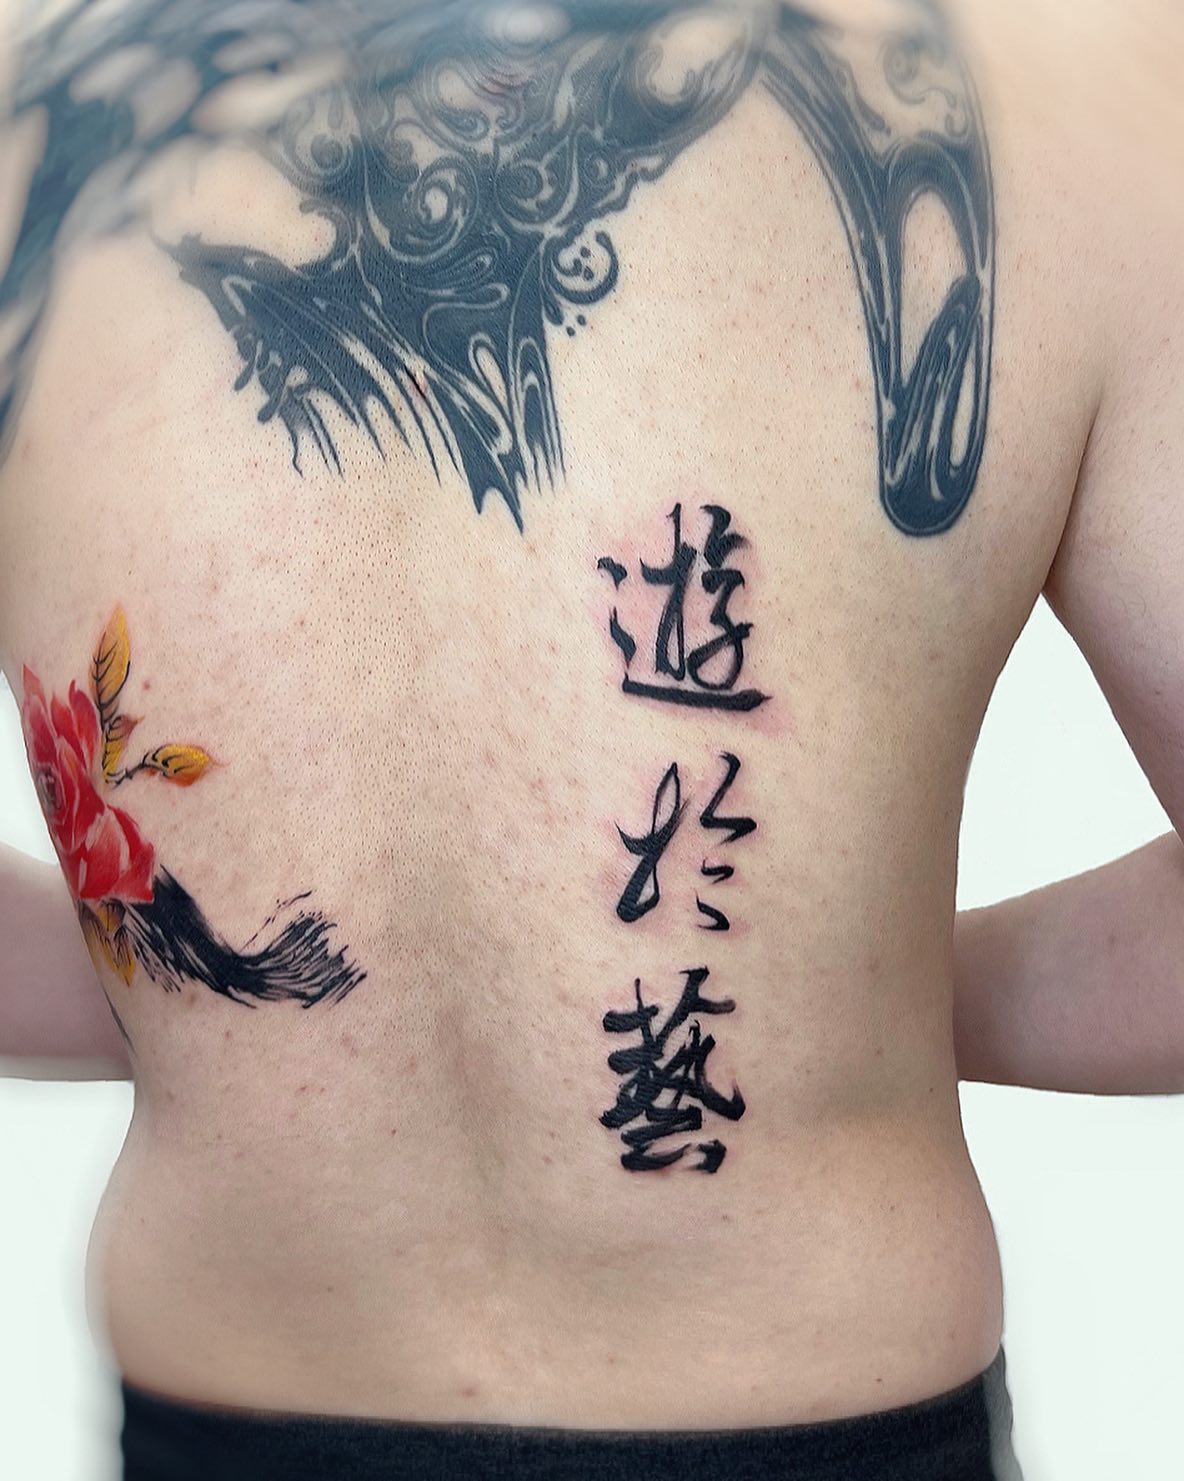 Fabuloso tatuaje de letra china en la espalda.